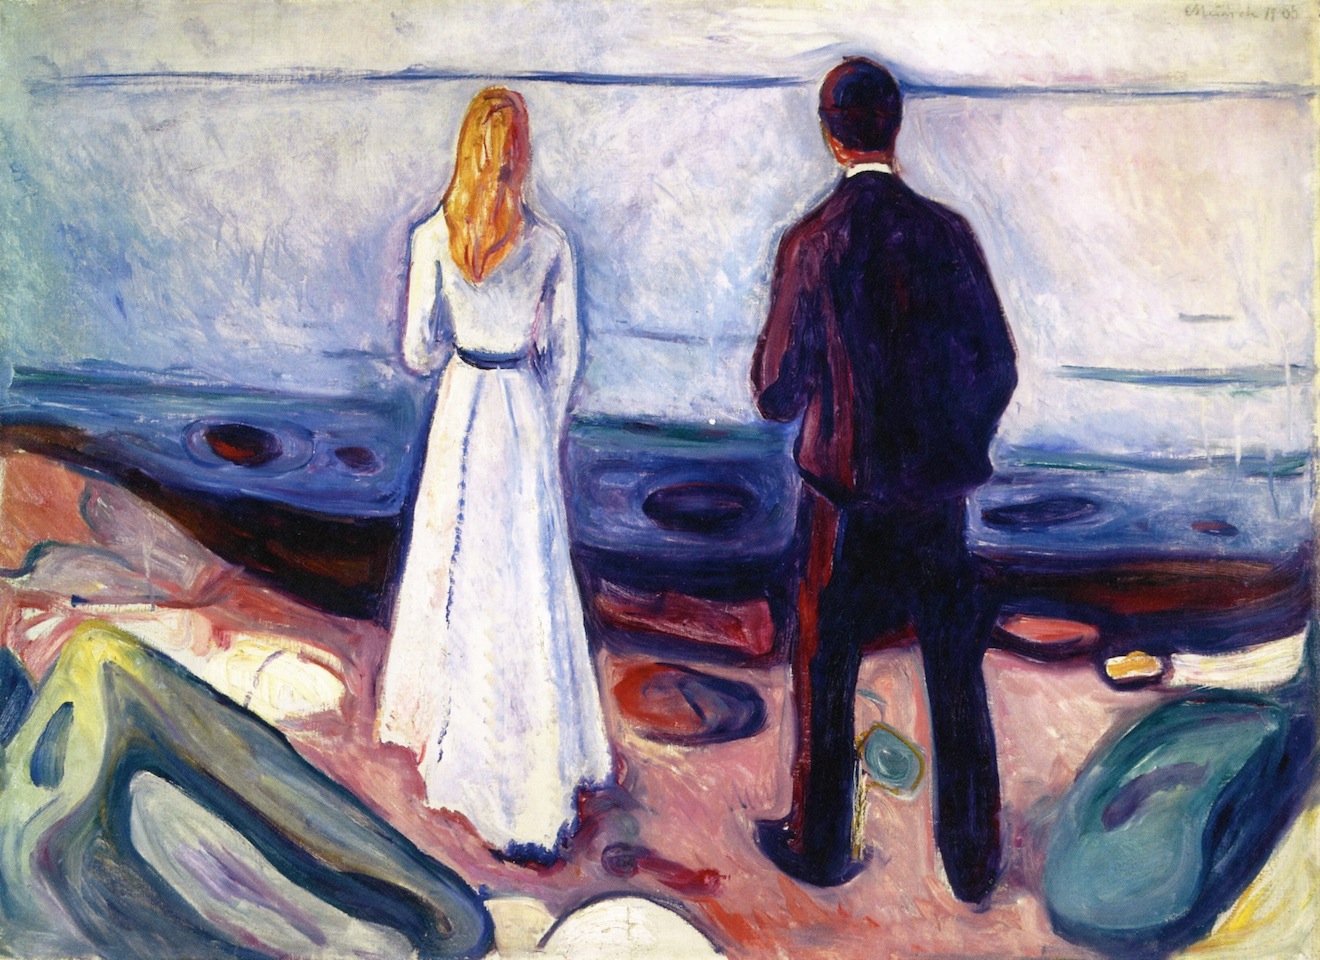 İki İnsan (Yalnız Olanlar) by Edvard Munch - 1898 - 80 × 110 cm özel koleksiyon